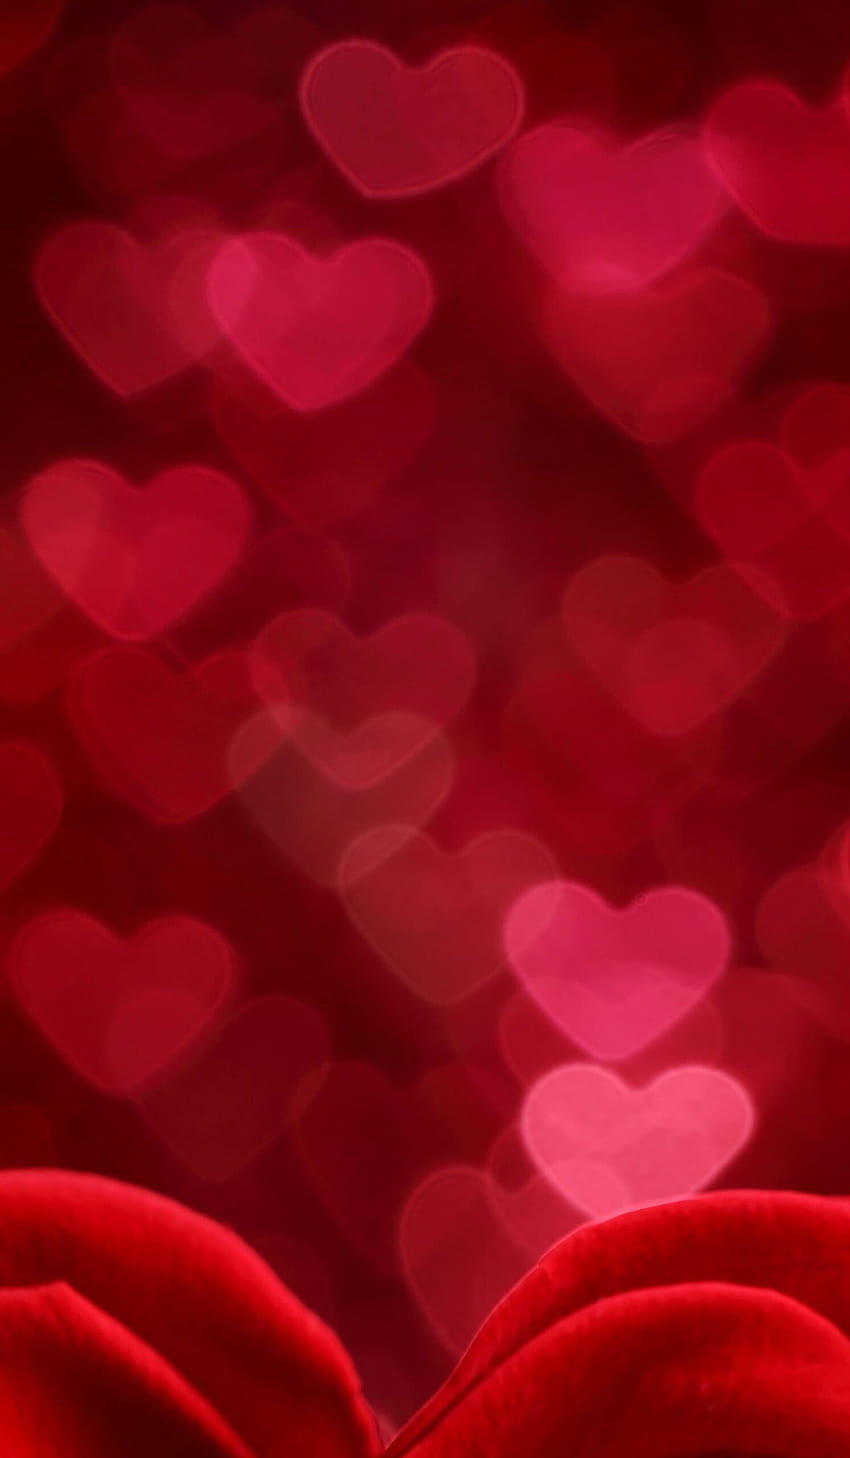 Đừng bỏ qua những những bức ảnh hoa hồng đỏ hình trái tim ngày Valentine dành cho người yêu thương của mình. Hình ảnh này sẽ đưa bạn đến với những cảm xúc nồng nàn và tình yêu đong đầy. Cùng ngắm nhìn những bông hoa tuyệt đẹp này và cảm nhận giá trị của tình yêu trong cuộc sống của bạn nhé!